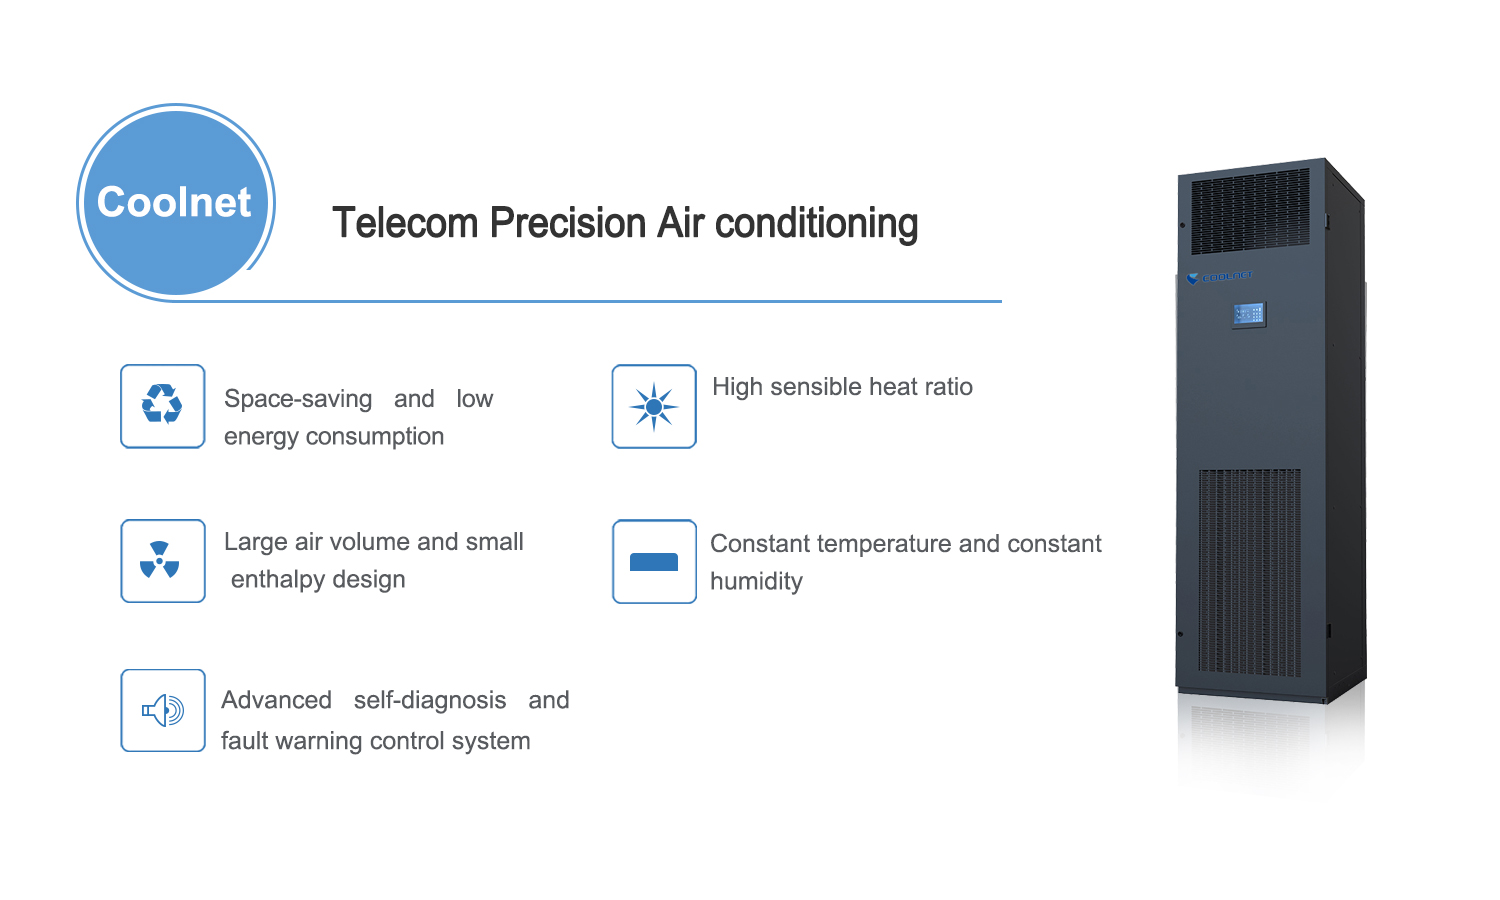 Telecom Precision Air Conditioning Poster